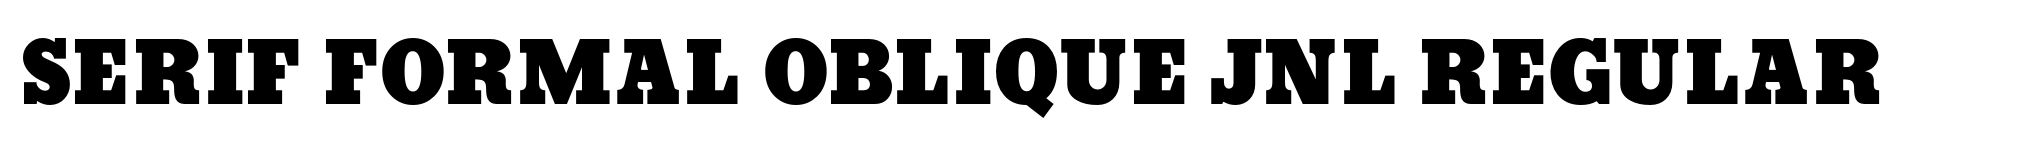 Serif Formal Oblique JNL Regular image